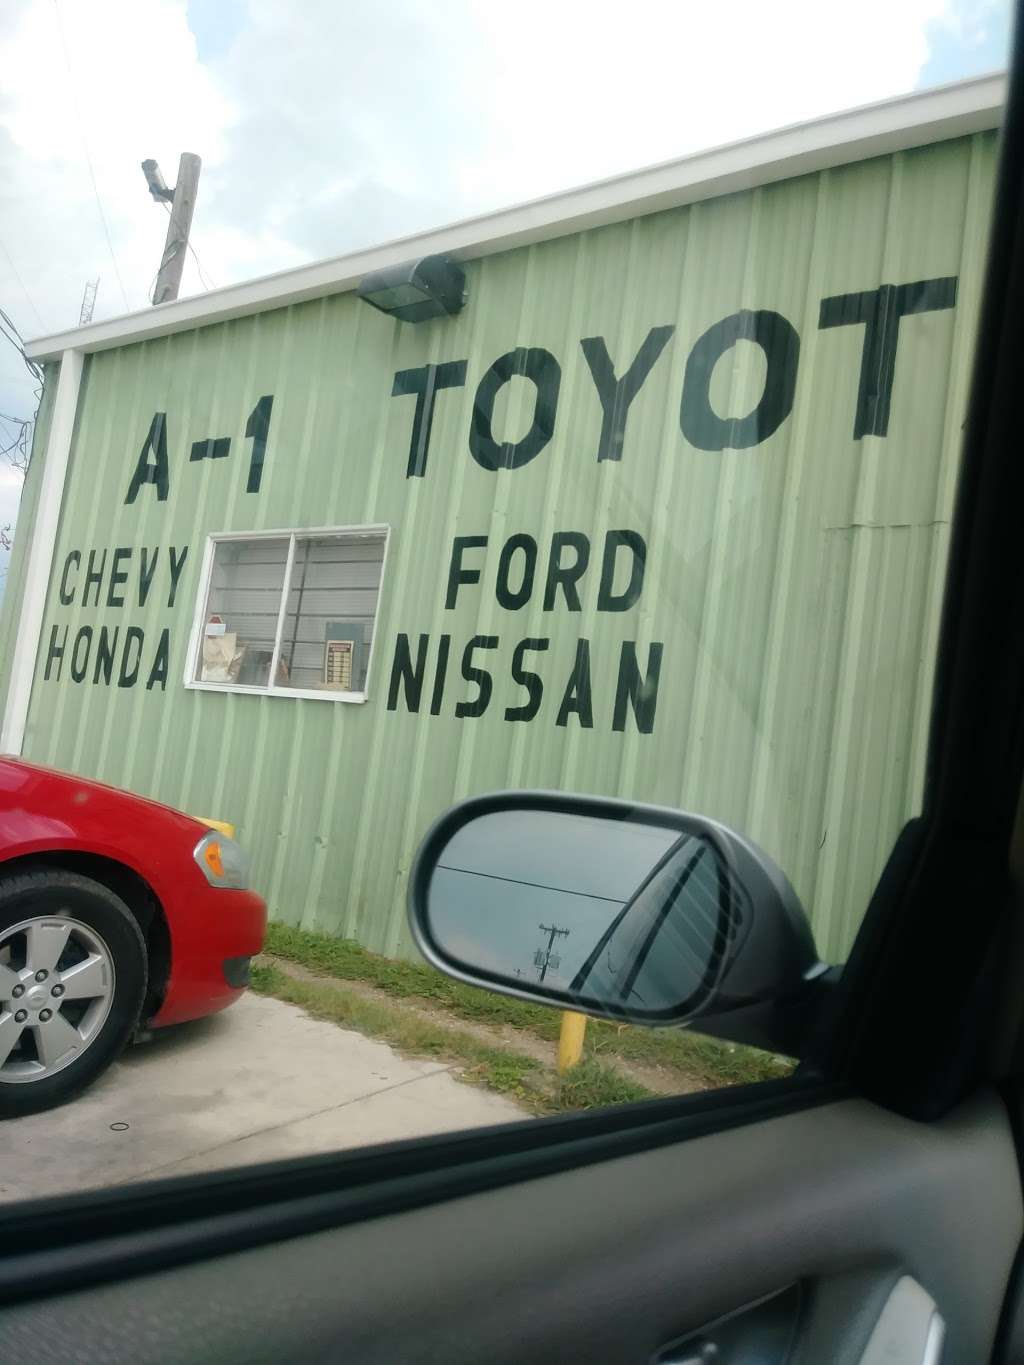 A-1 Toyota Salvage | 302 New Laredo Hwy, San Antonio, TX 78211, USA | Phone: (210) 921-0031